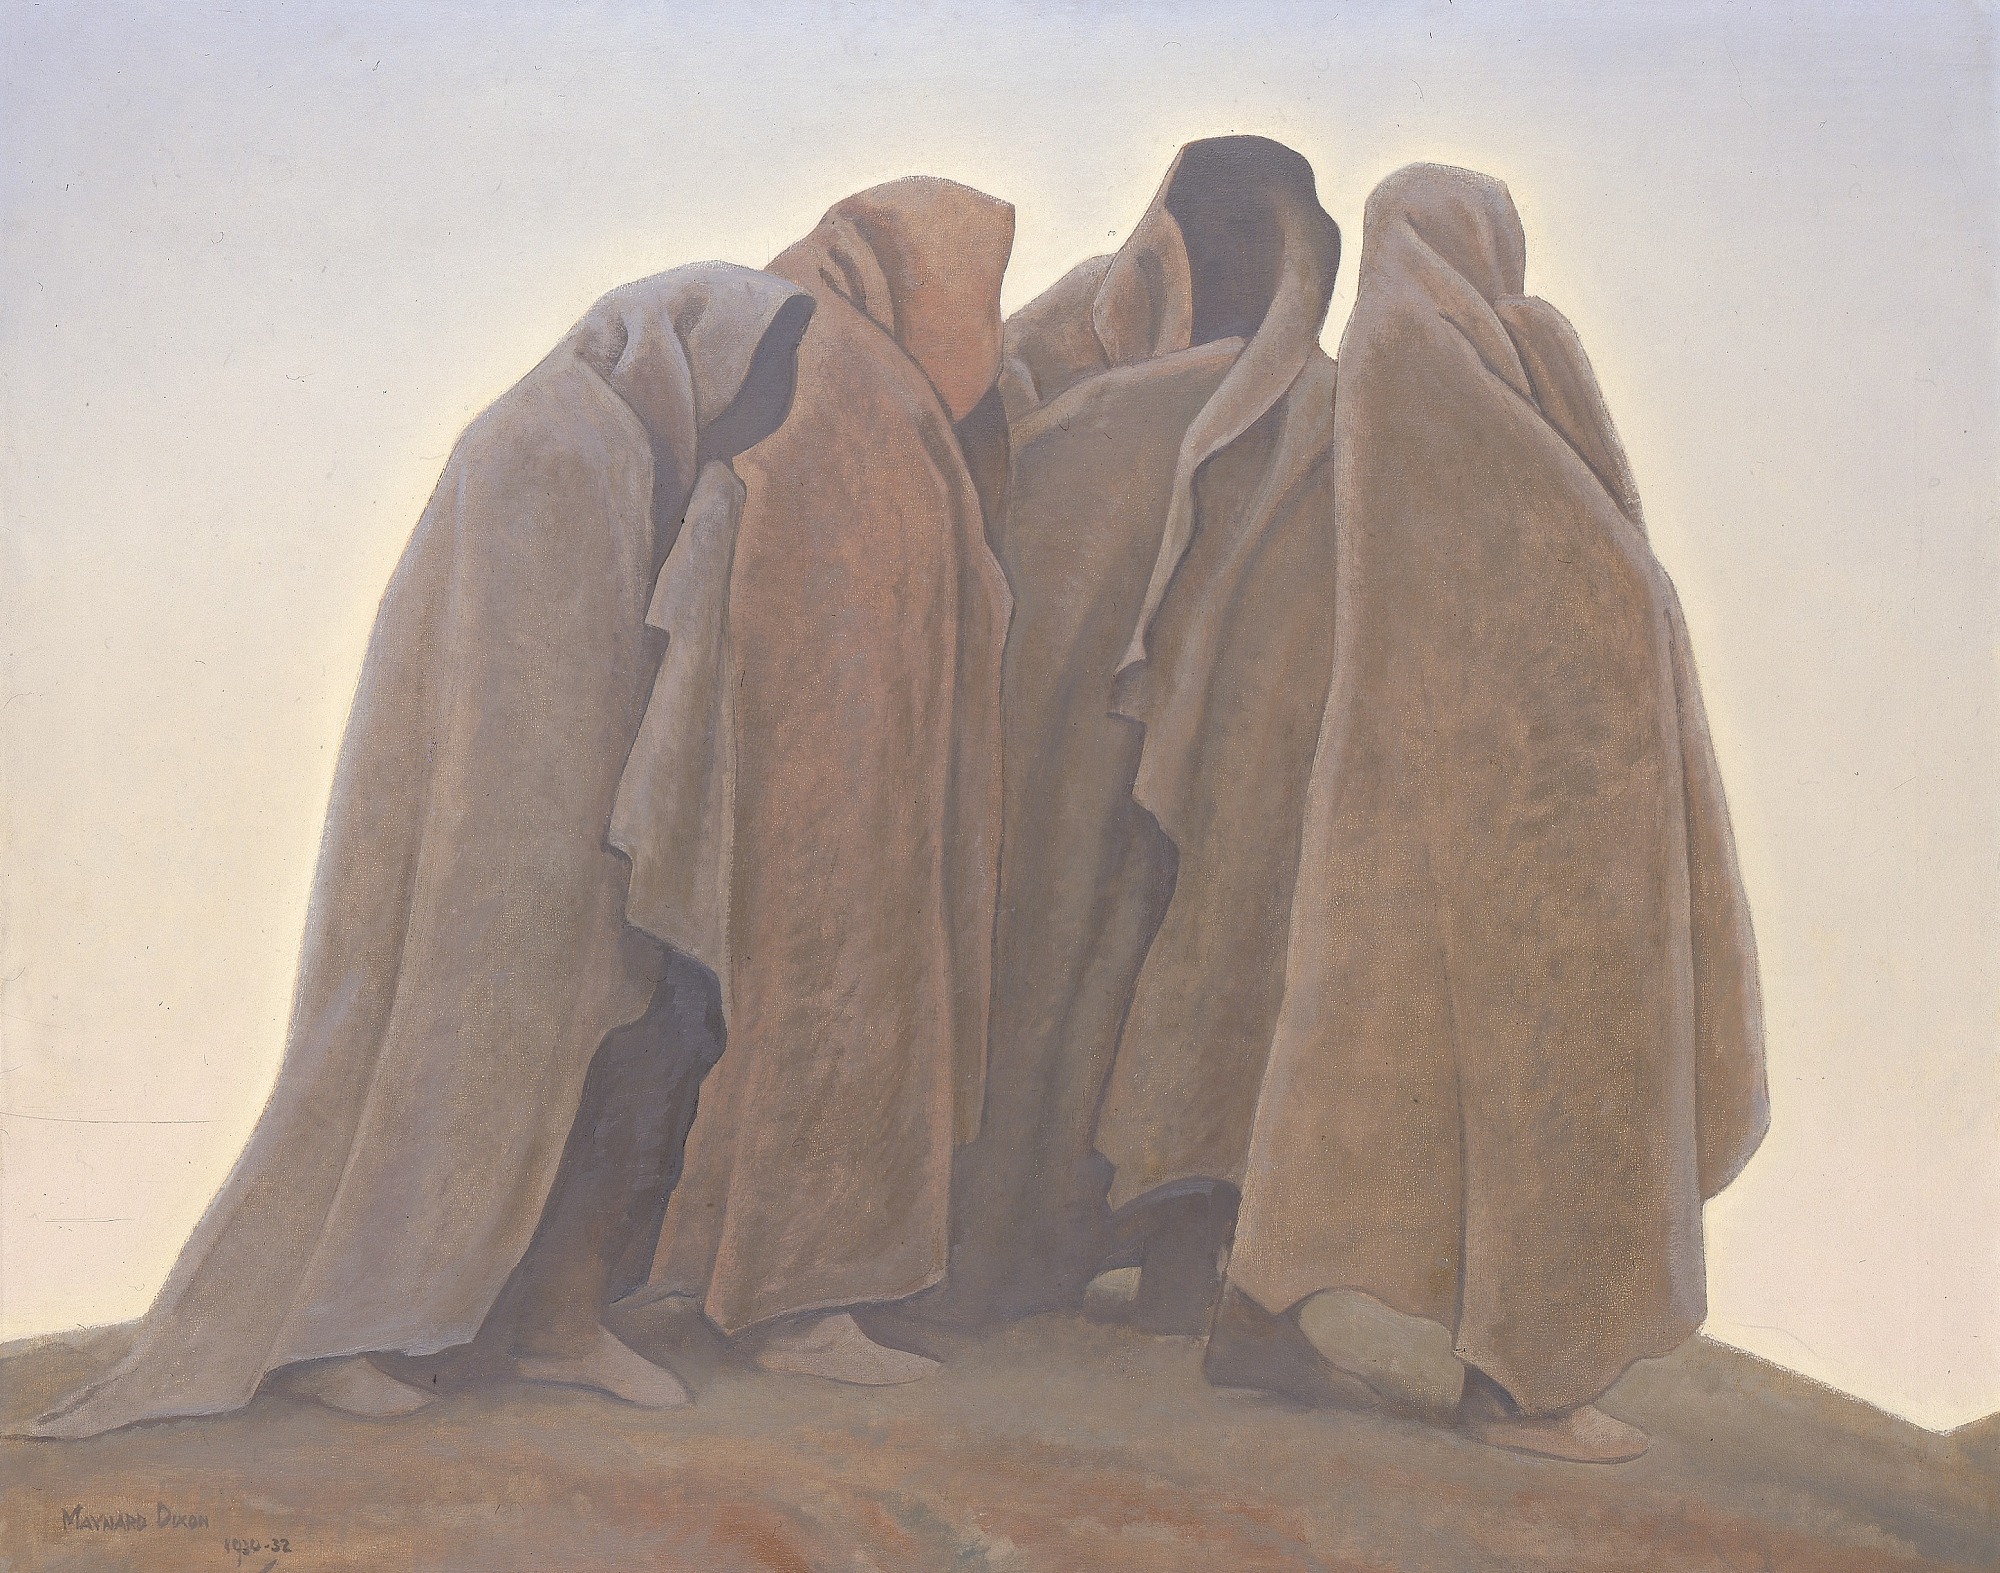 恐怖の形 by Maynard Dixon - 1930-32年 - 101.5 x 127.3 cm 